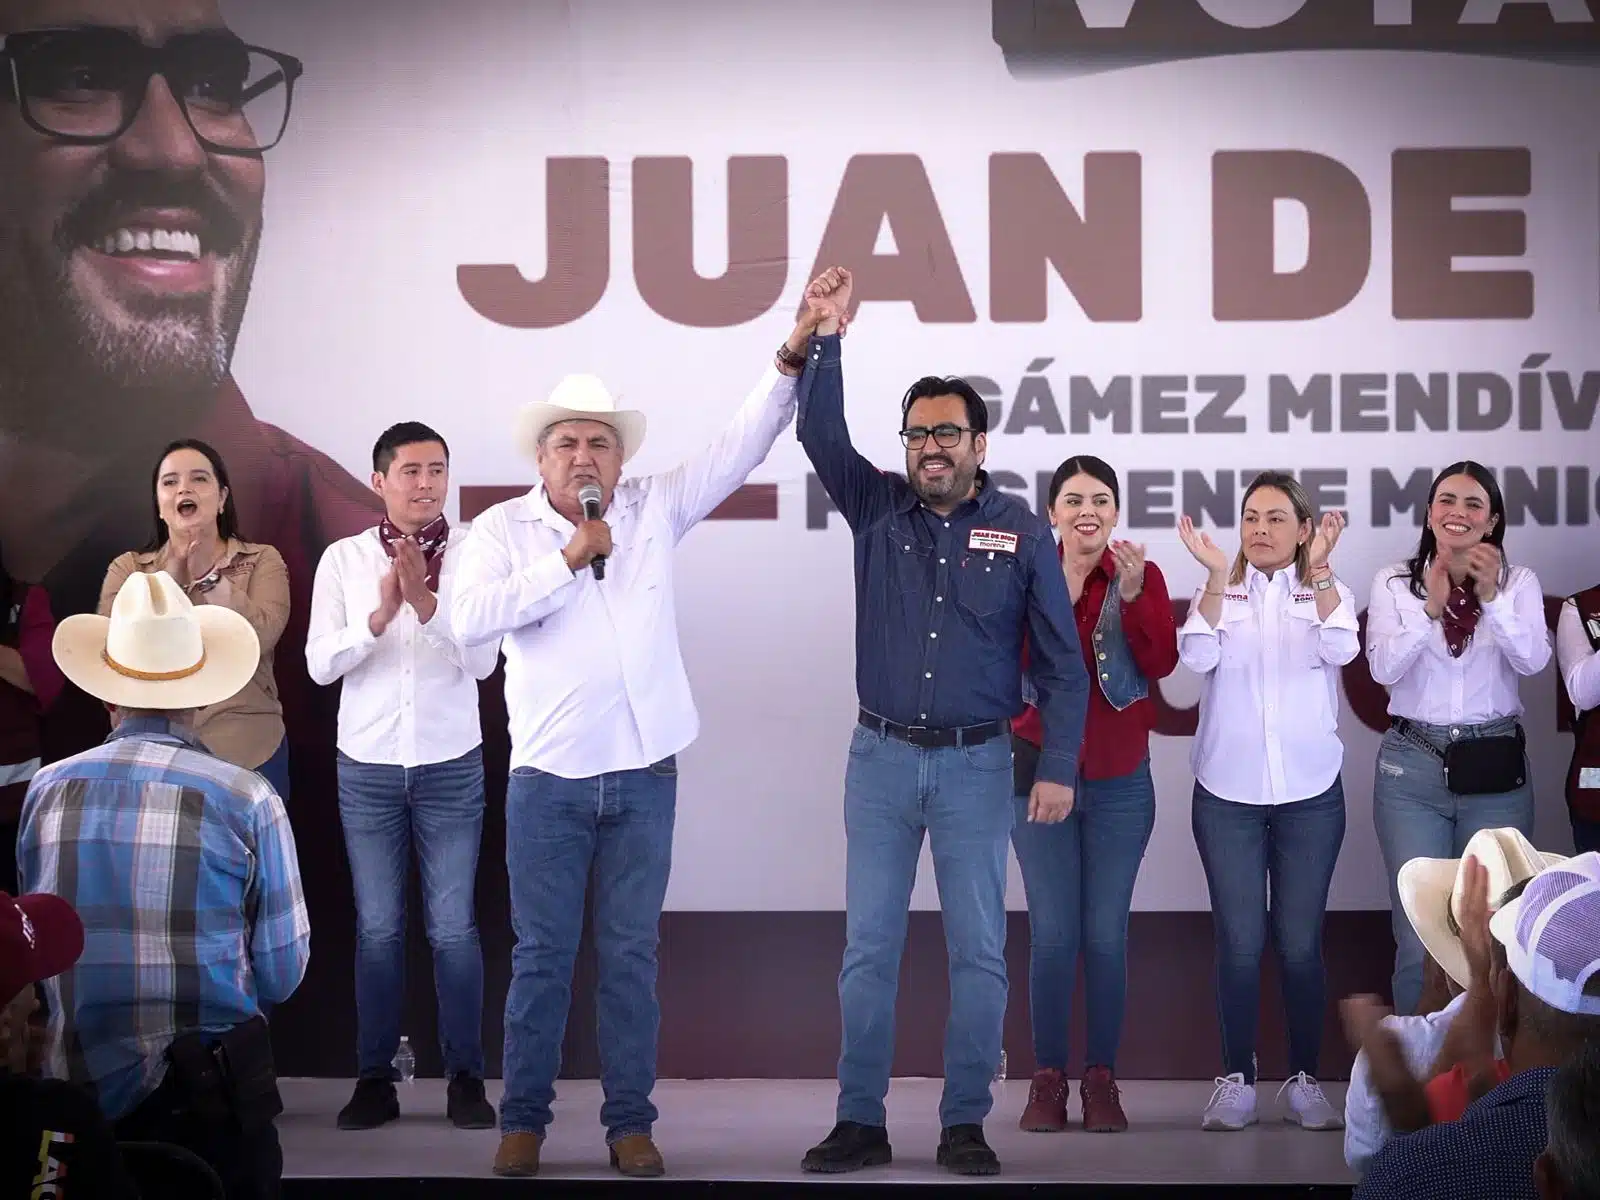 Faustino Hernández, presidente de la Unión Ganadera Regional de Sinaloa, levantado la mano de Juan de Dios Gámez Mendívil, candidato a la presidencia municipal de Culiacán, en la sindicatura de Baila